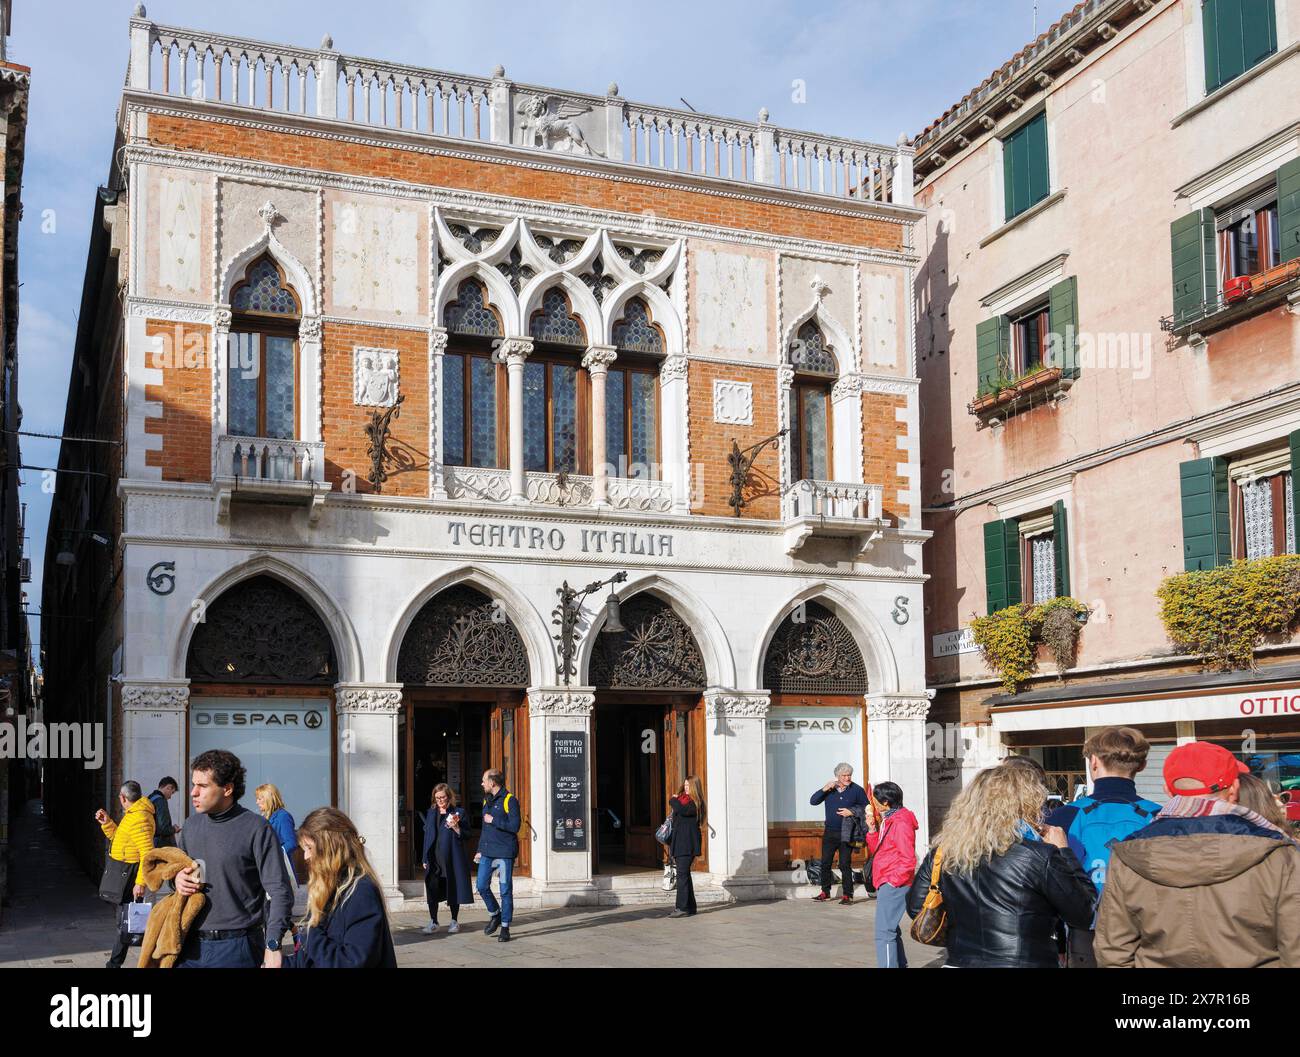 Venezia, Provincia di Venezia, regione Veneto, Italia. Campiello De l'Anconeta e il supermercato Teatro Italia. Venezia è un sito patrimonio dell'umanità dell'UNESCO. Foto Stock